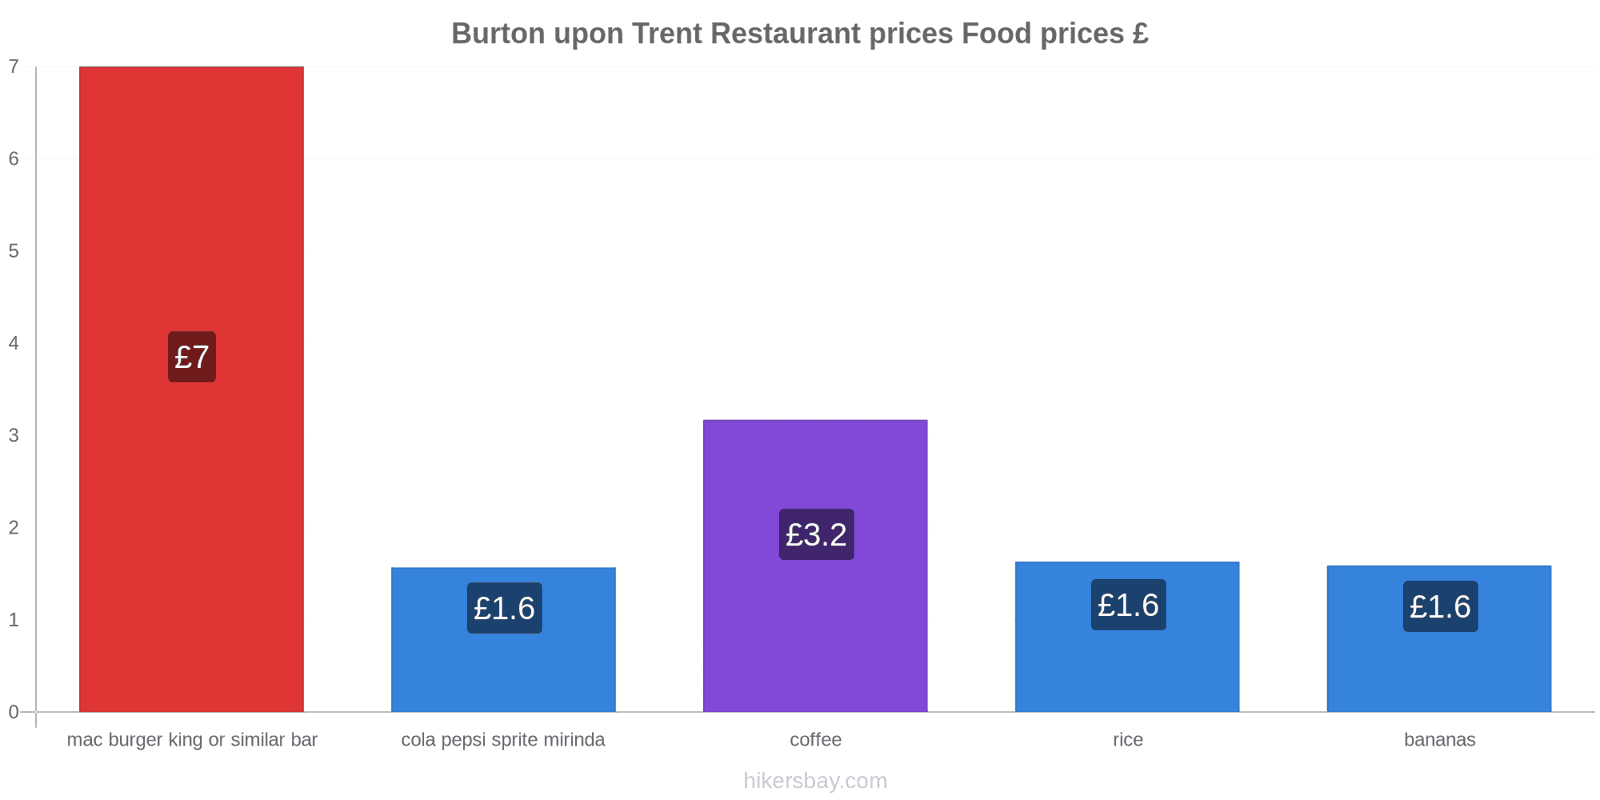 Burton upon Trent price changes hikersbay.com